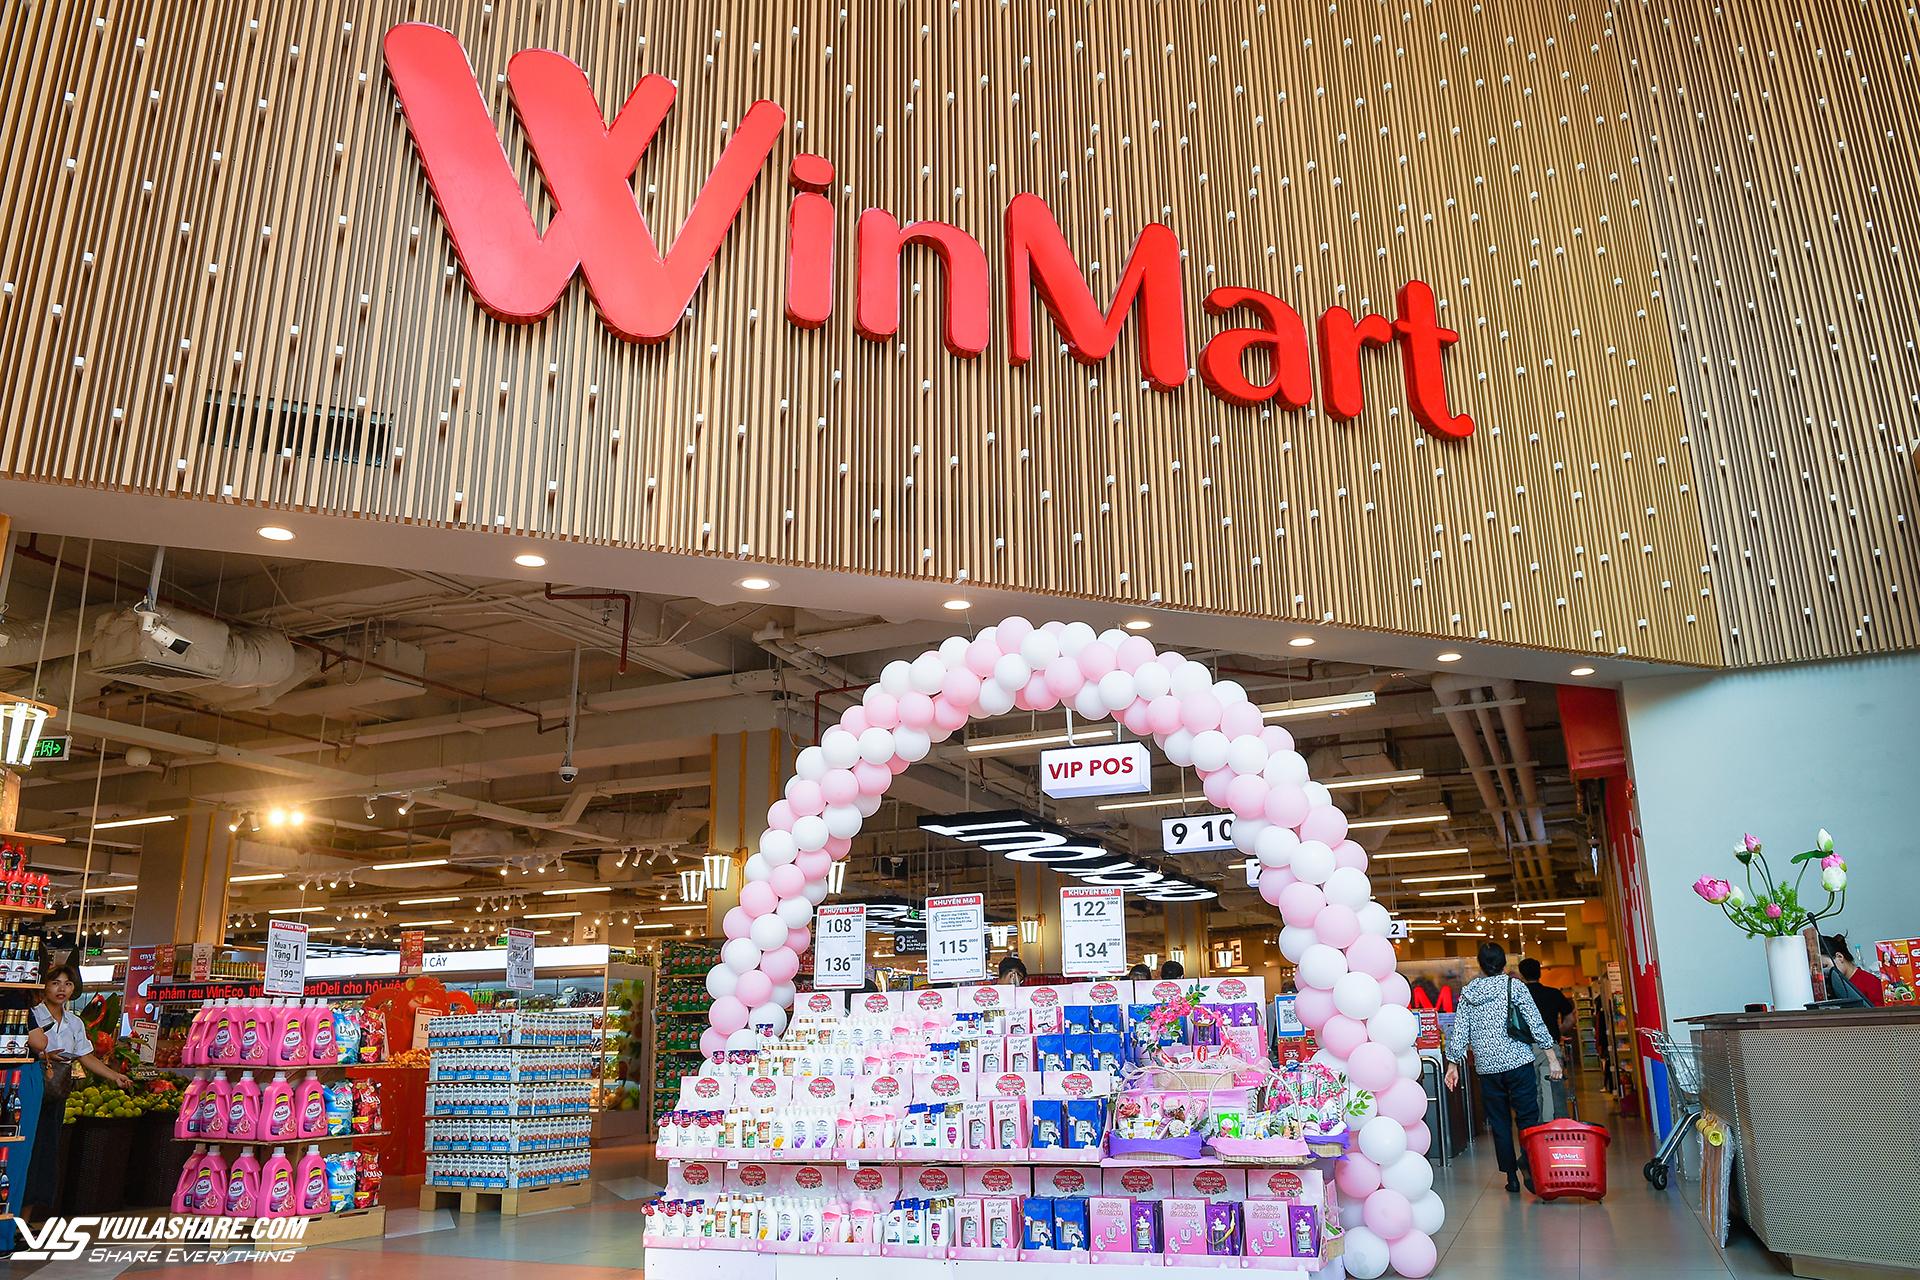 WinMart với không gian mua sắm mới mẻ kết hợp cùng các chương trình ưu đãi lớn thu hút sự chú ý của người tiêu dùng